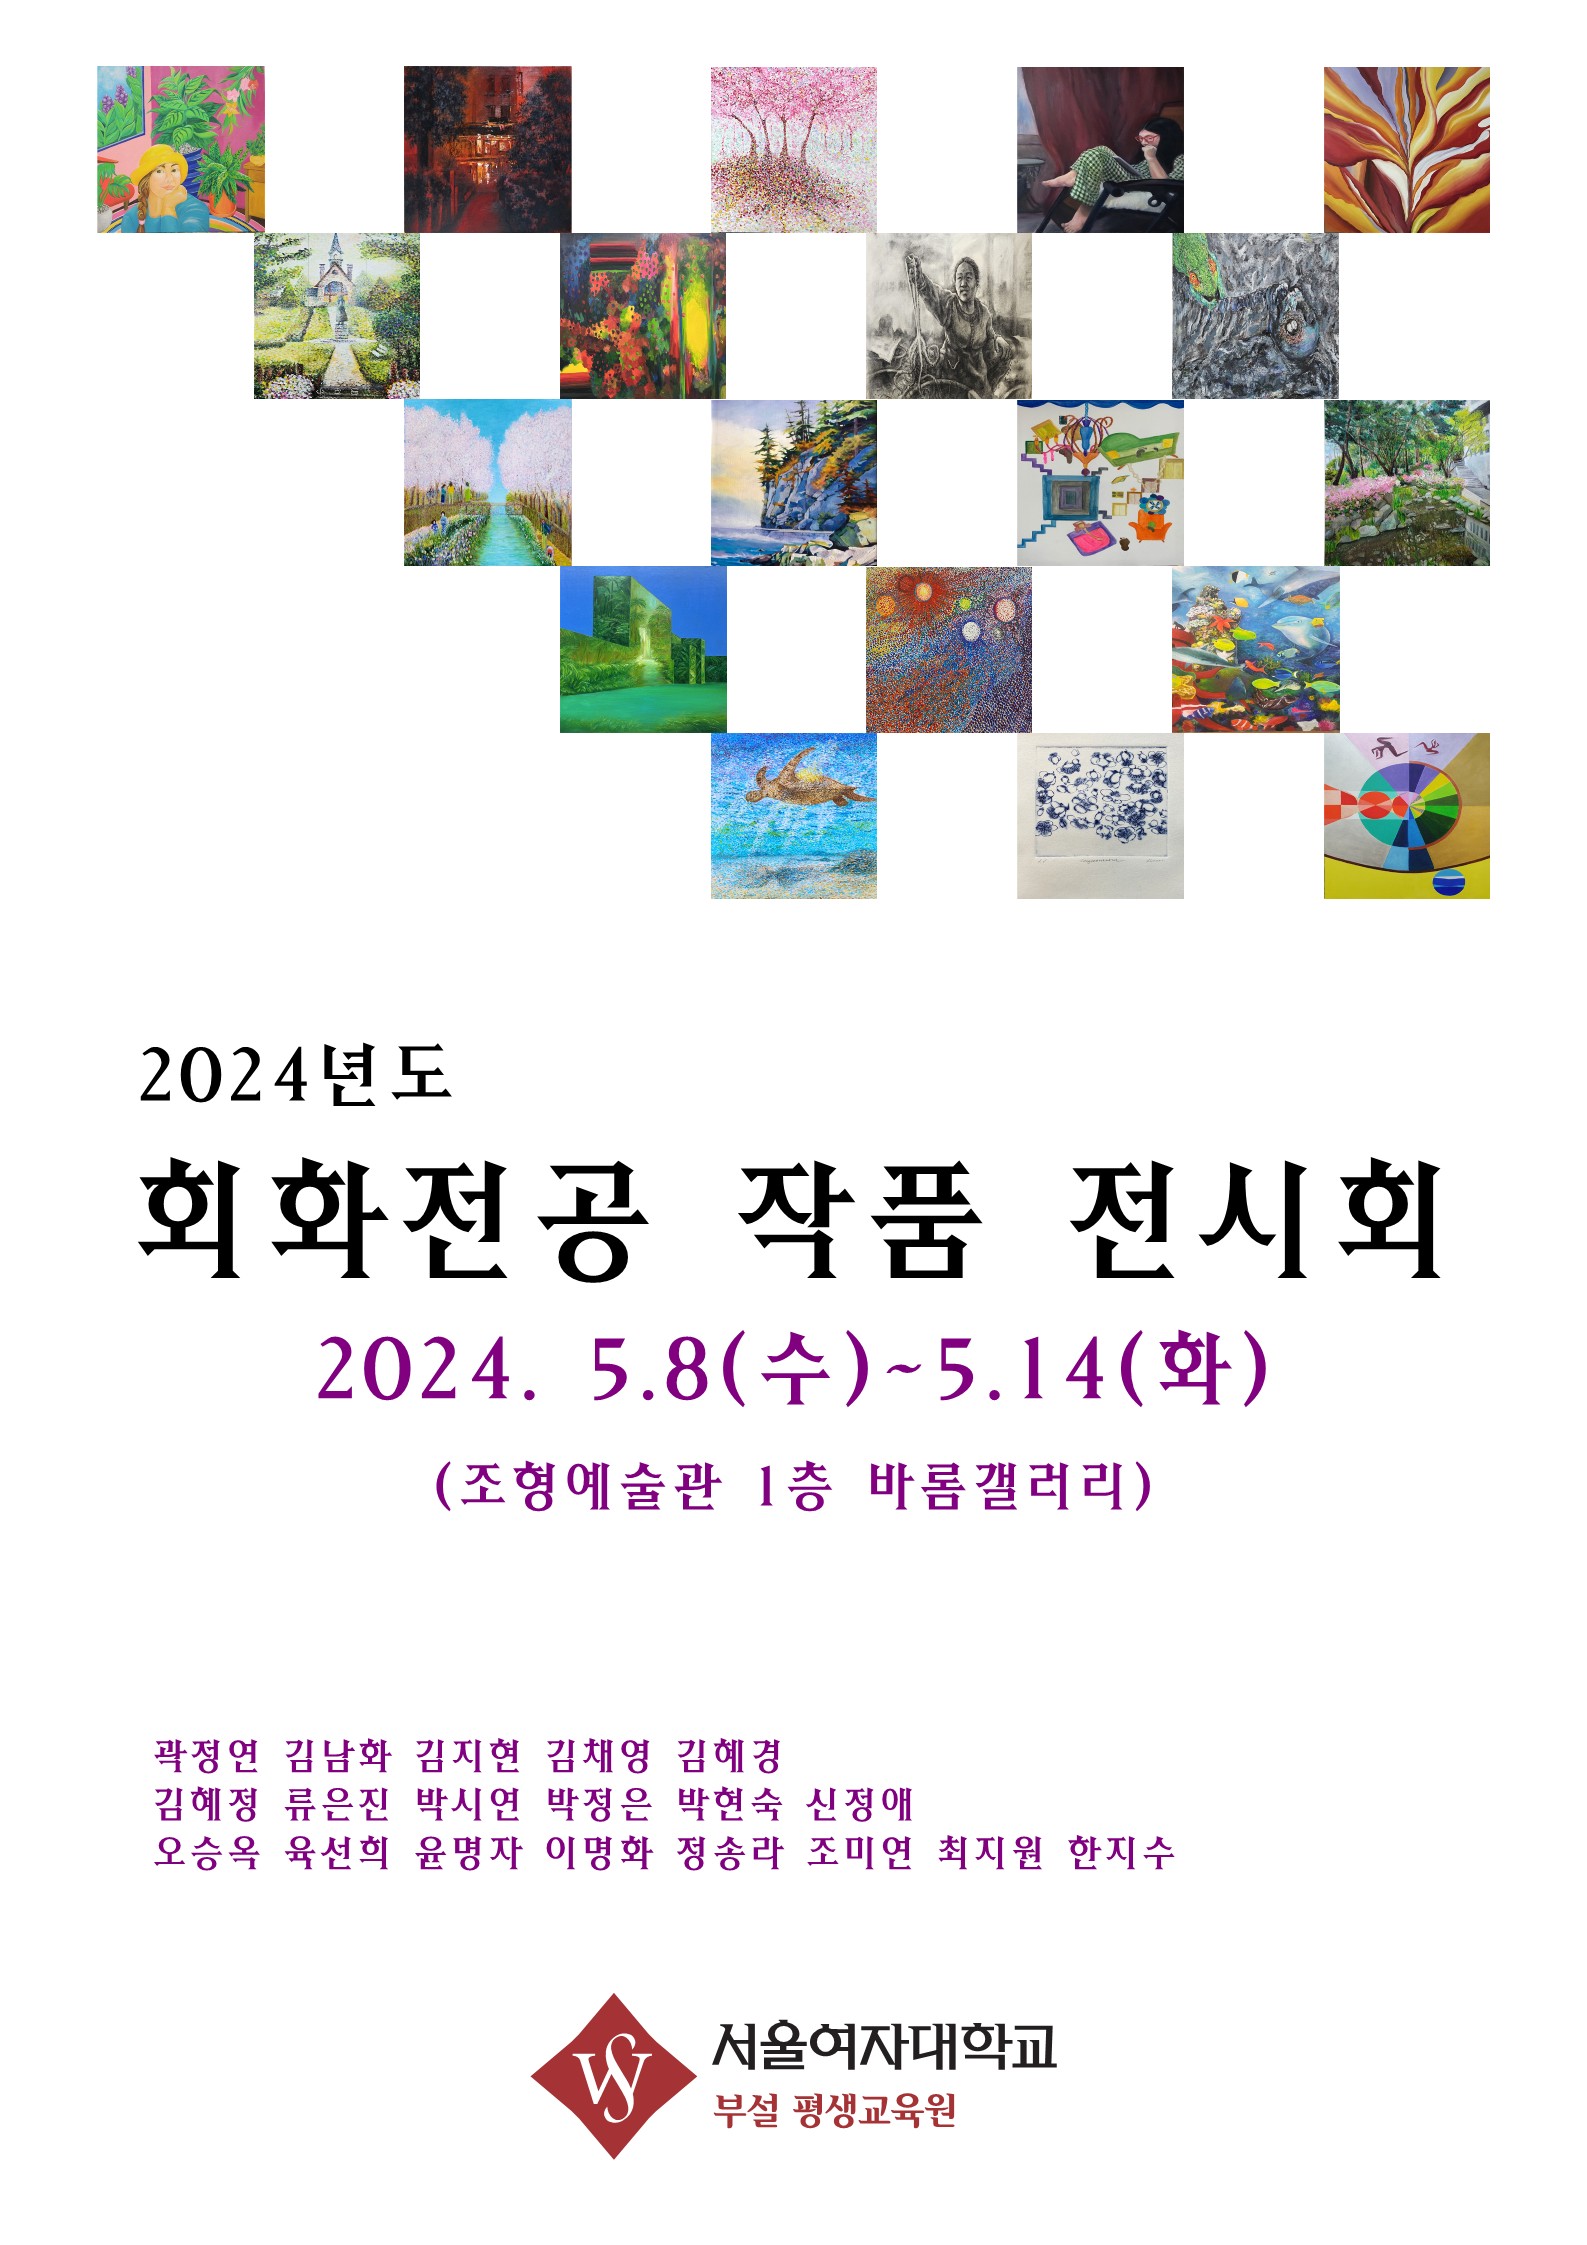 24.05 현대미술 전시회 | 제5회 너그나리 전시회 | 서울여자대학교 평생교육원